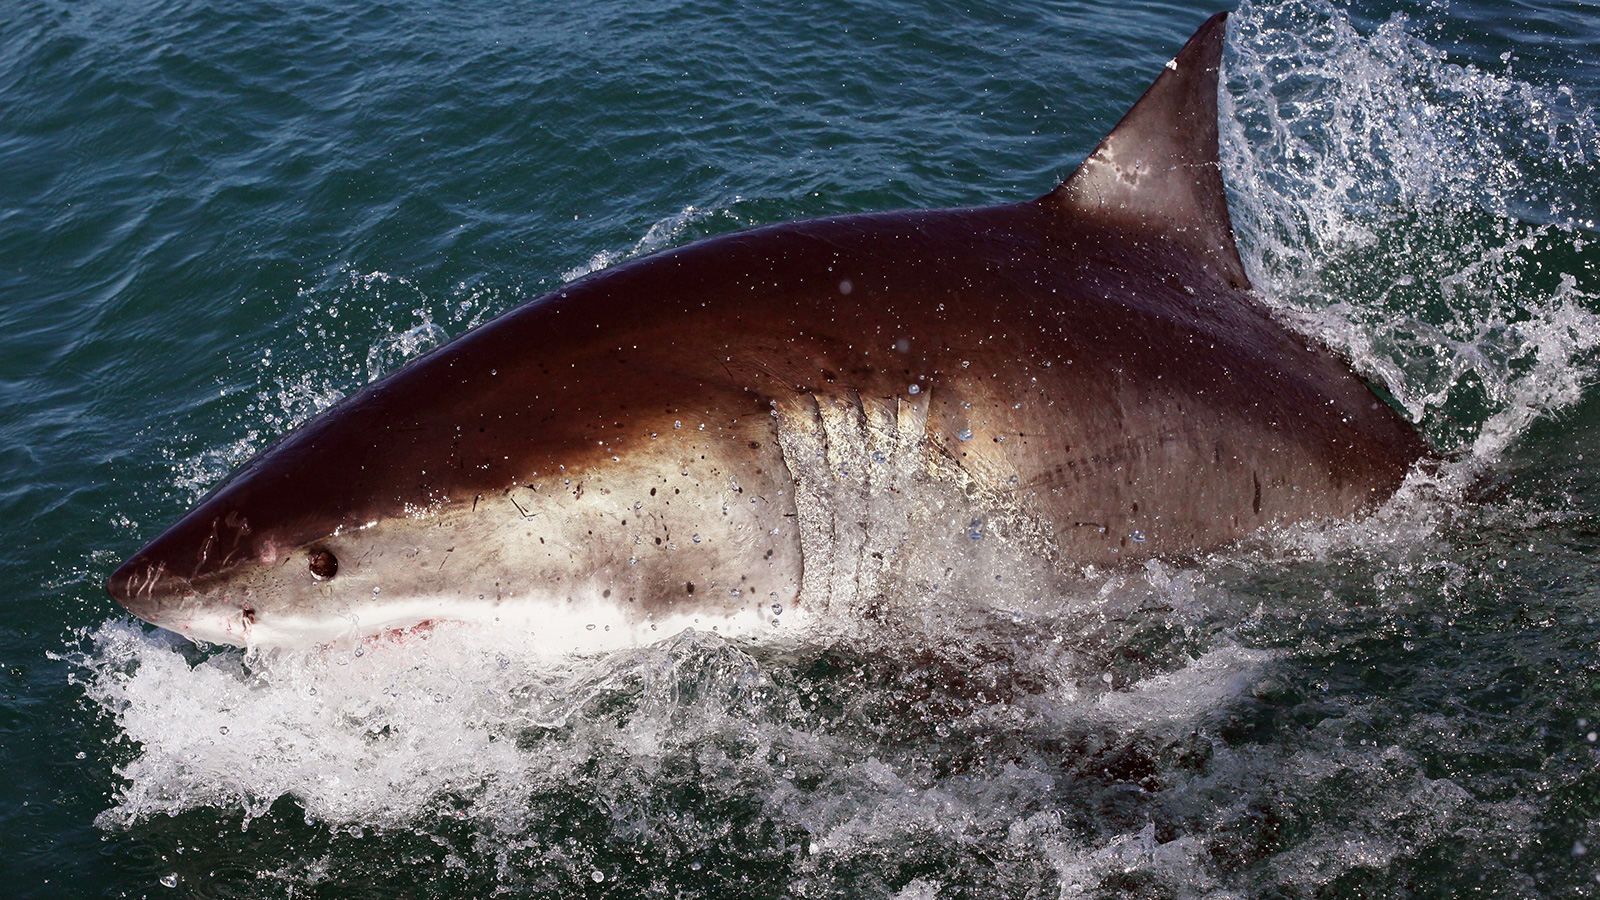  القرش الأبيض الكبير يميل للعيش بالمحيطات وينفق حين يتم نقله إلى حوض (غيتي)